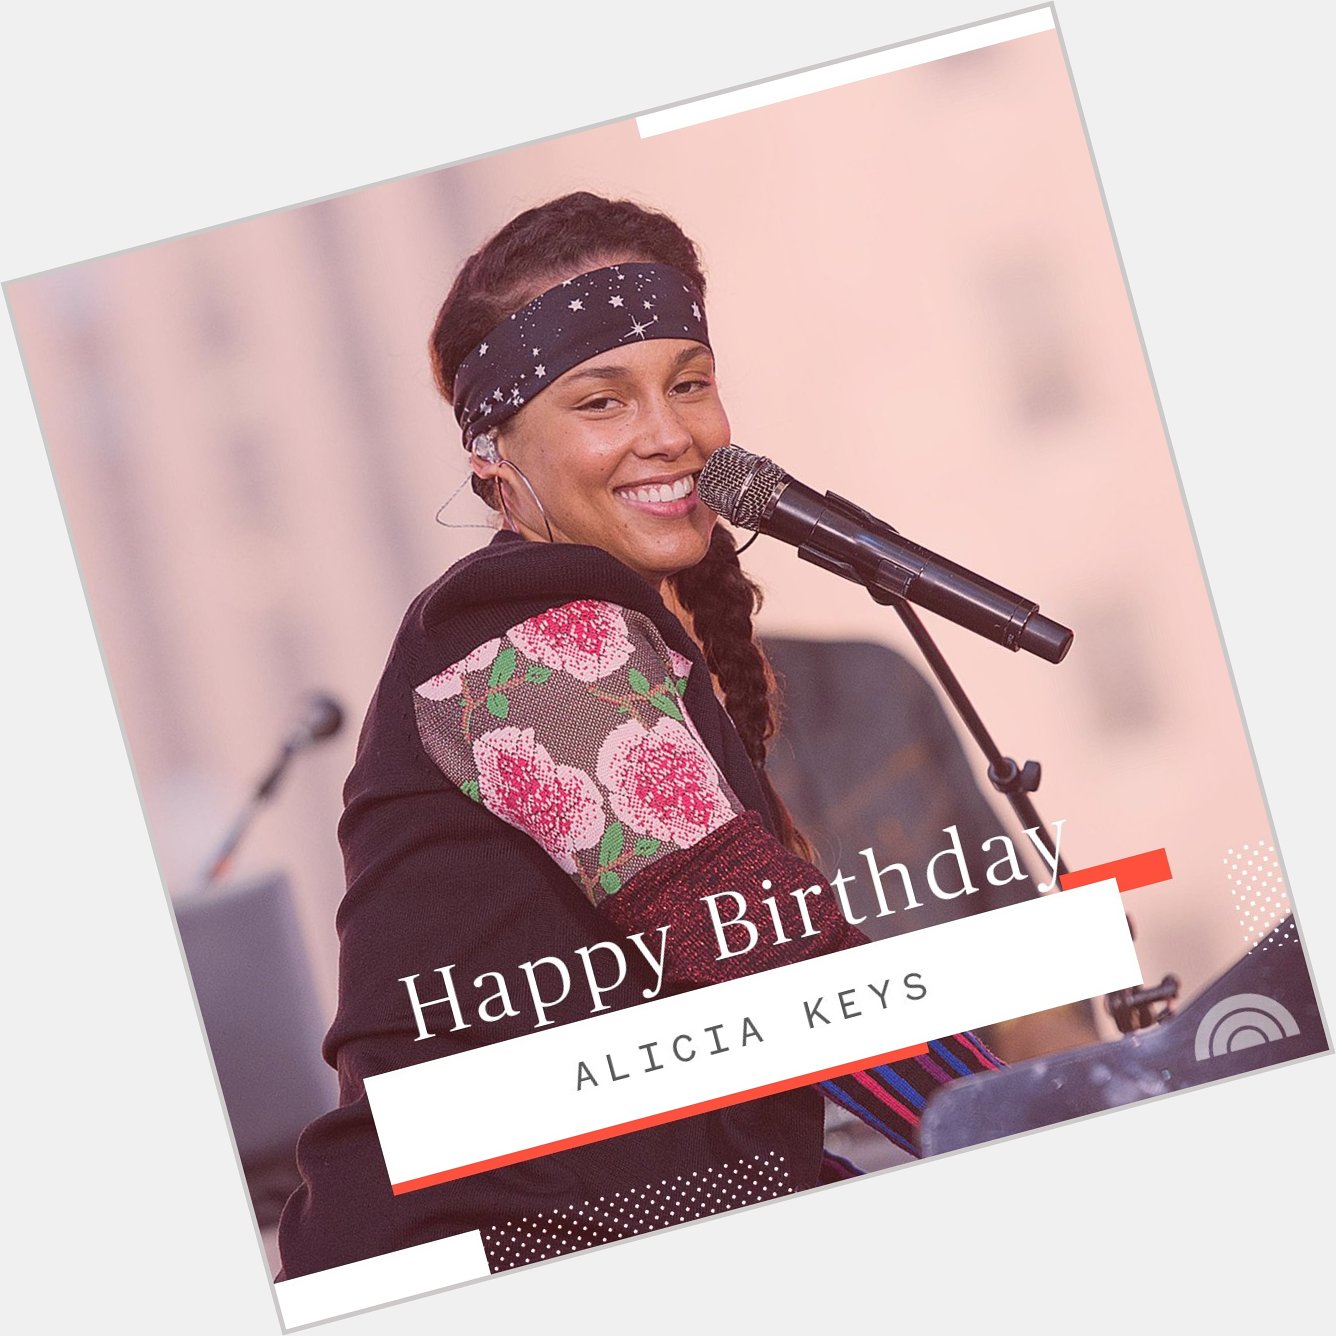 Happy birthday to the beautiful Alicia Keys! 